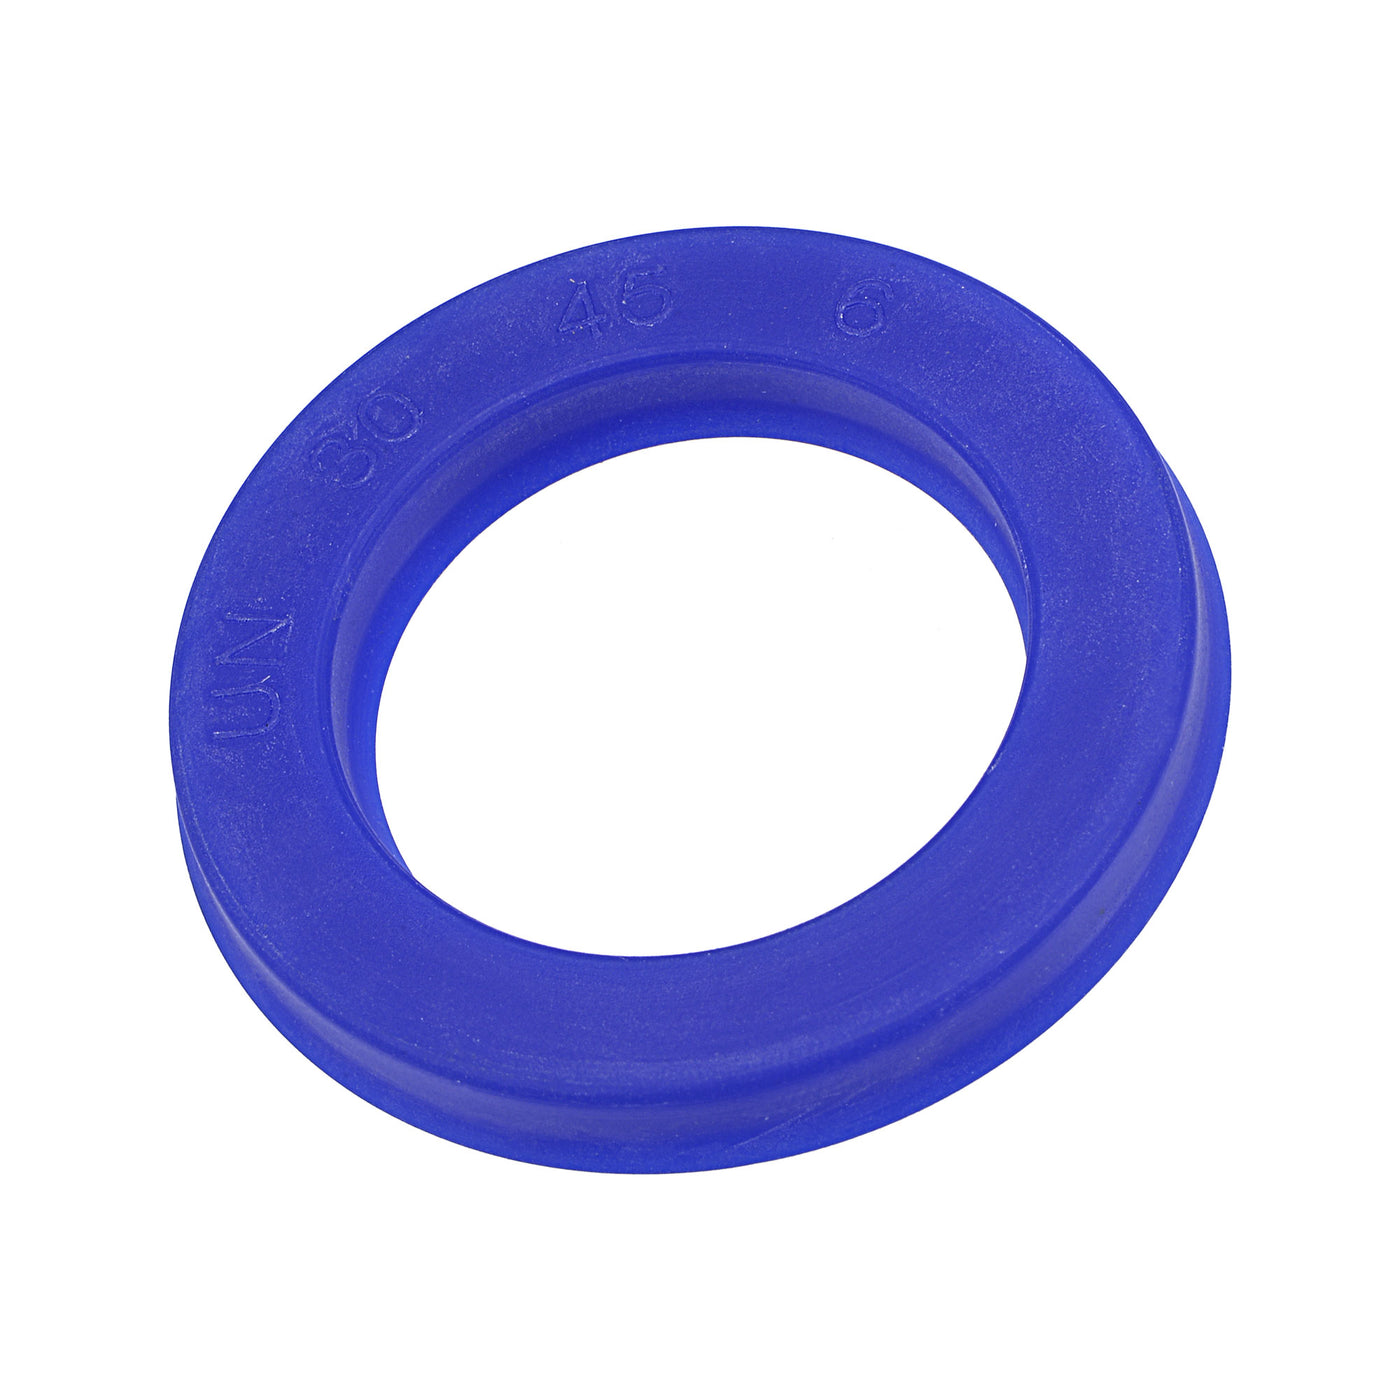 Harfington UN Radial Shaft Seal 30mm ID x 45mm OD x 6mm Width PU Oil Seal, Blue Pack of 5